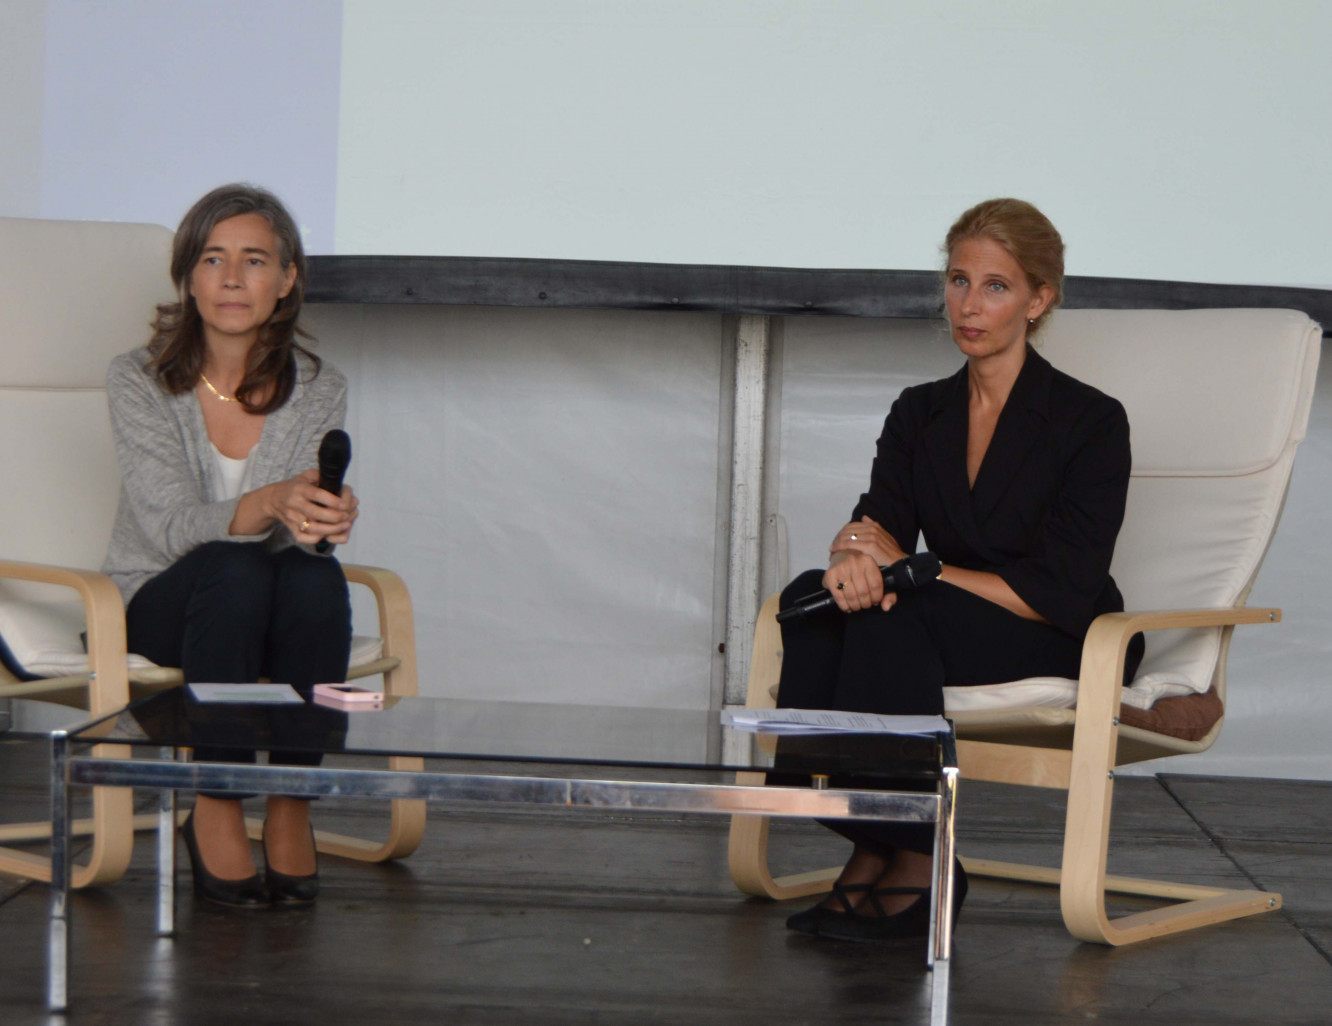 Les participants ont pu échanger avec Jennifer Blanke (à droite), directrice économique du World Economic Forum, sur les conclusions pour la France et l'Europe du rapport sur la « croissance inclusive ».